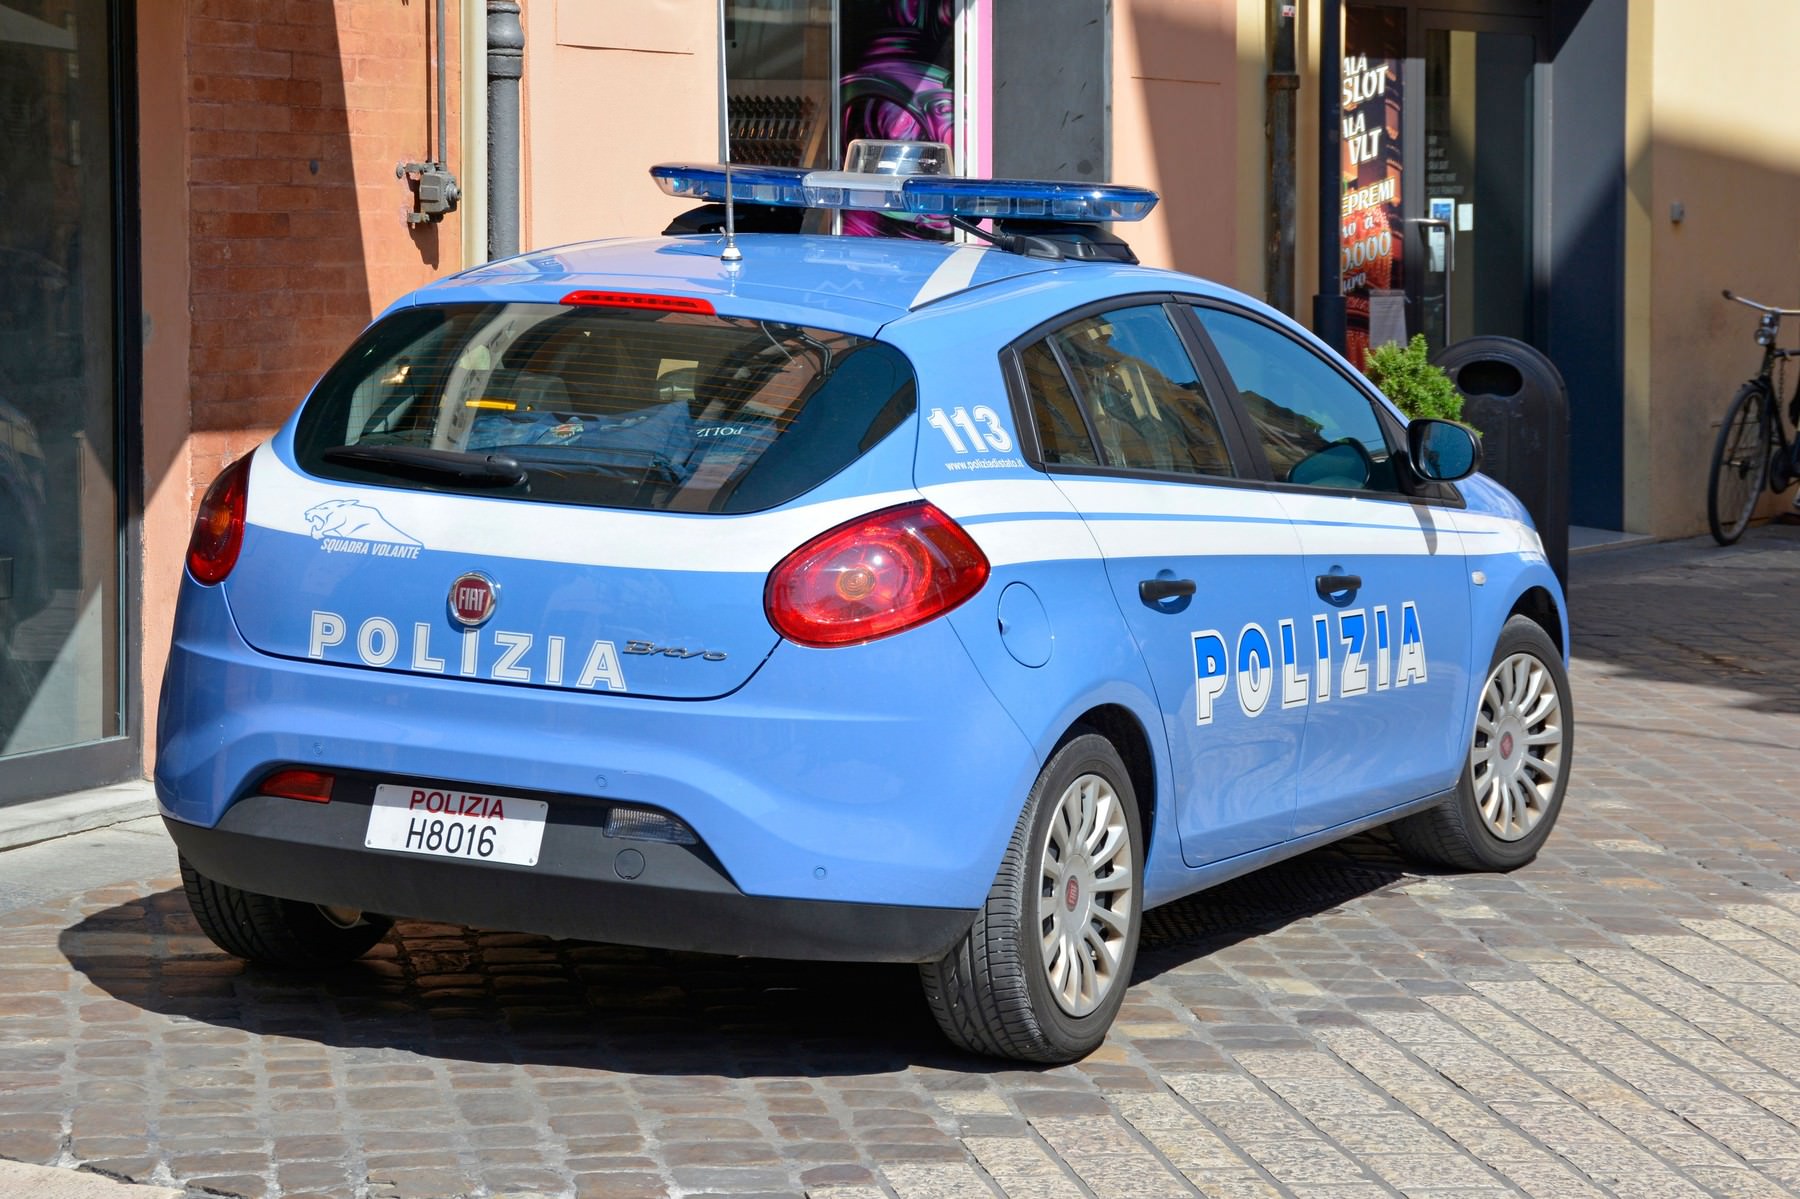 profimedia-0199470103-italijanska-policija-profimedia.jpg